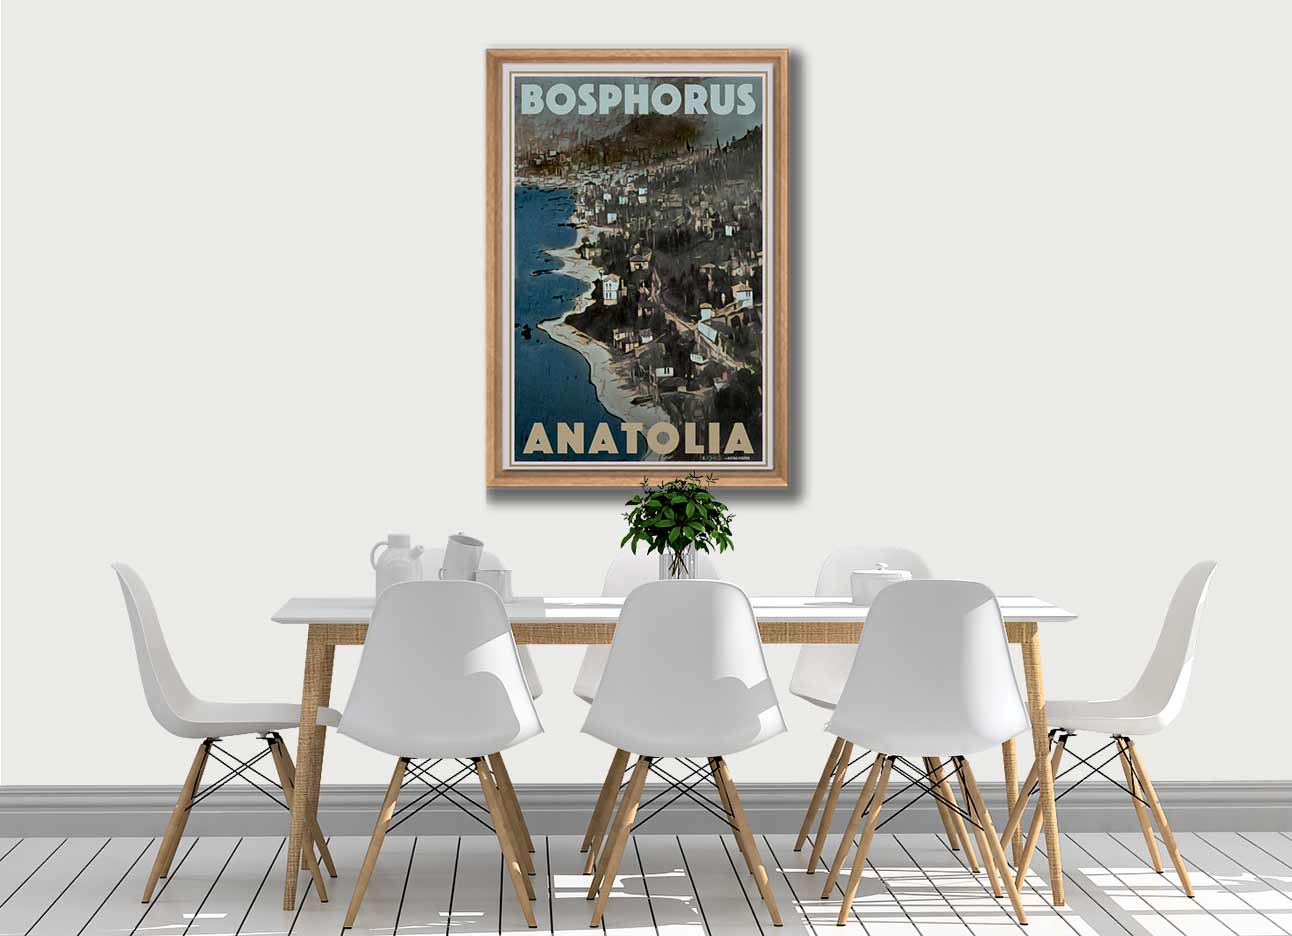 AFFICHE BOSPHORUS ANATOLIA encadrée | Édition Limitée | Conception originale par Alecse™ | Série d'affiches de voyage vintage